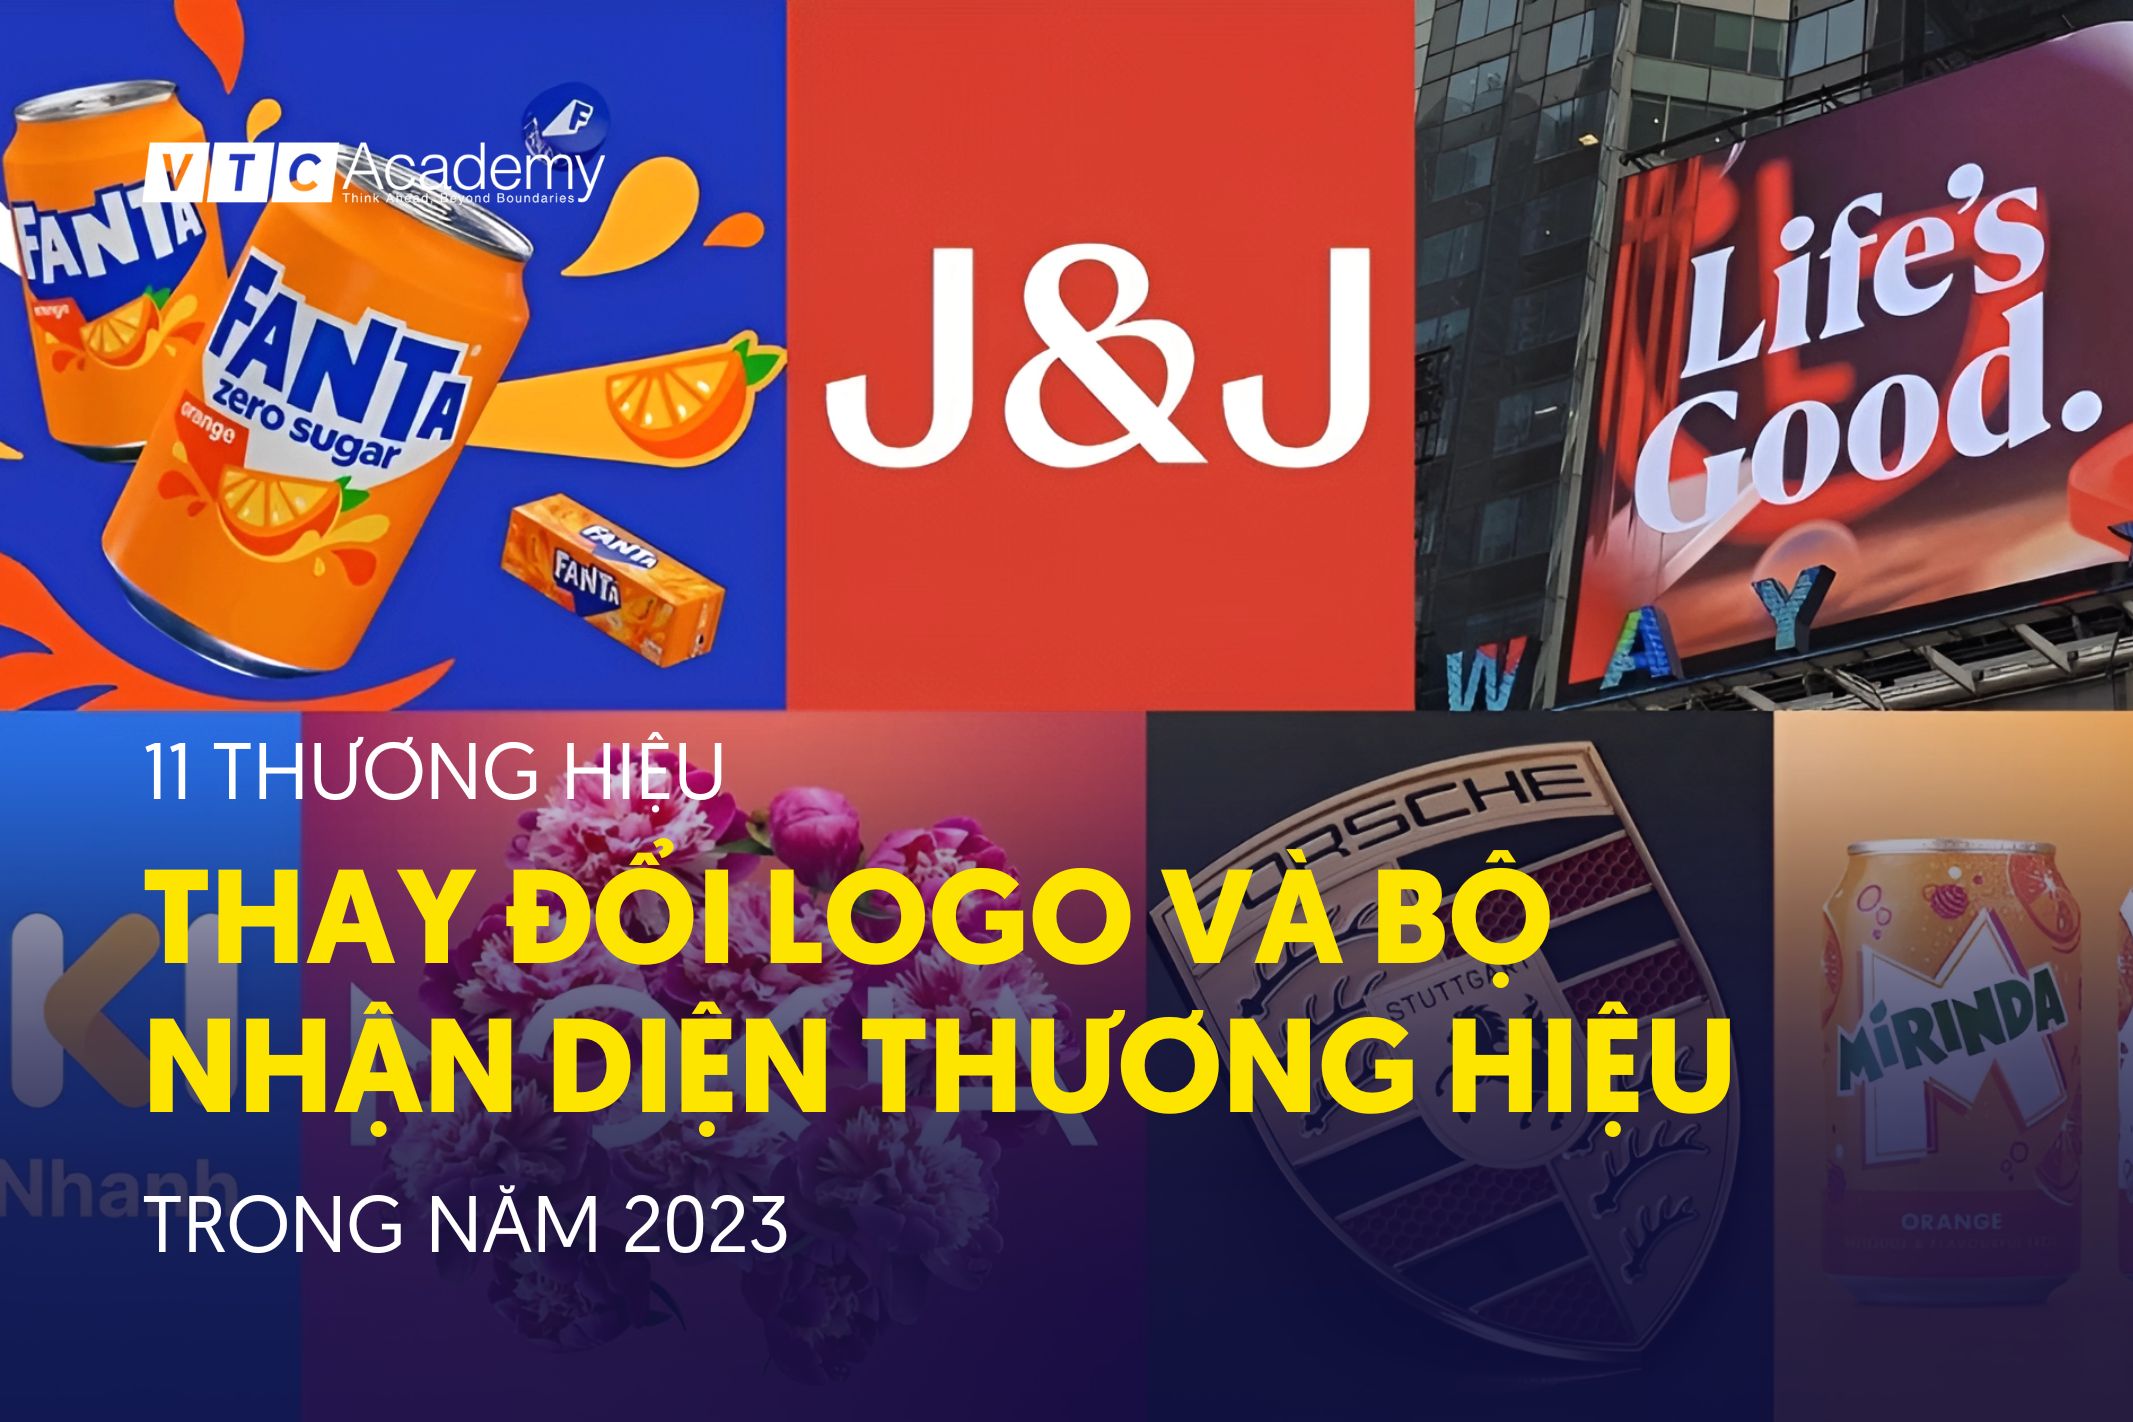 11 thương hiệu nổi tiếng thay đổi logo và bộ nhận diện thương hiệu trong năm 2023